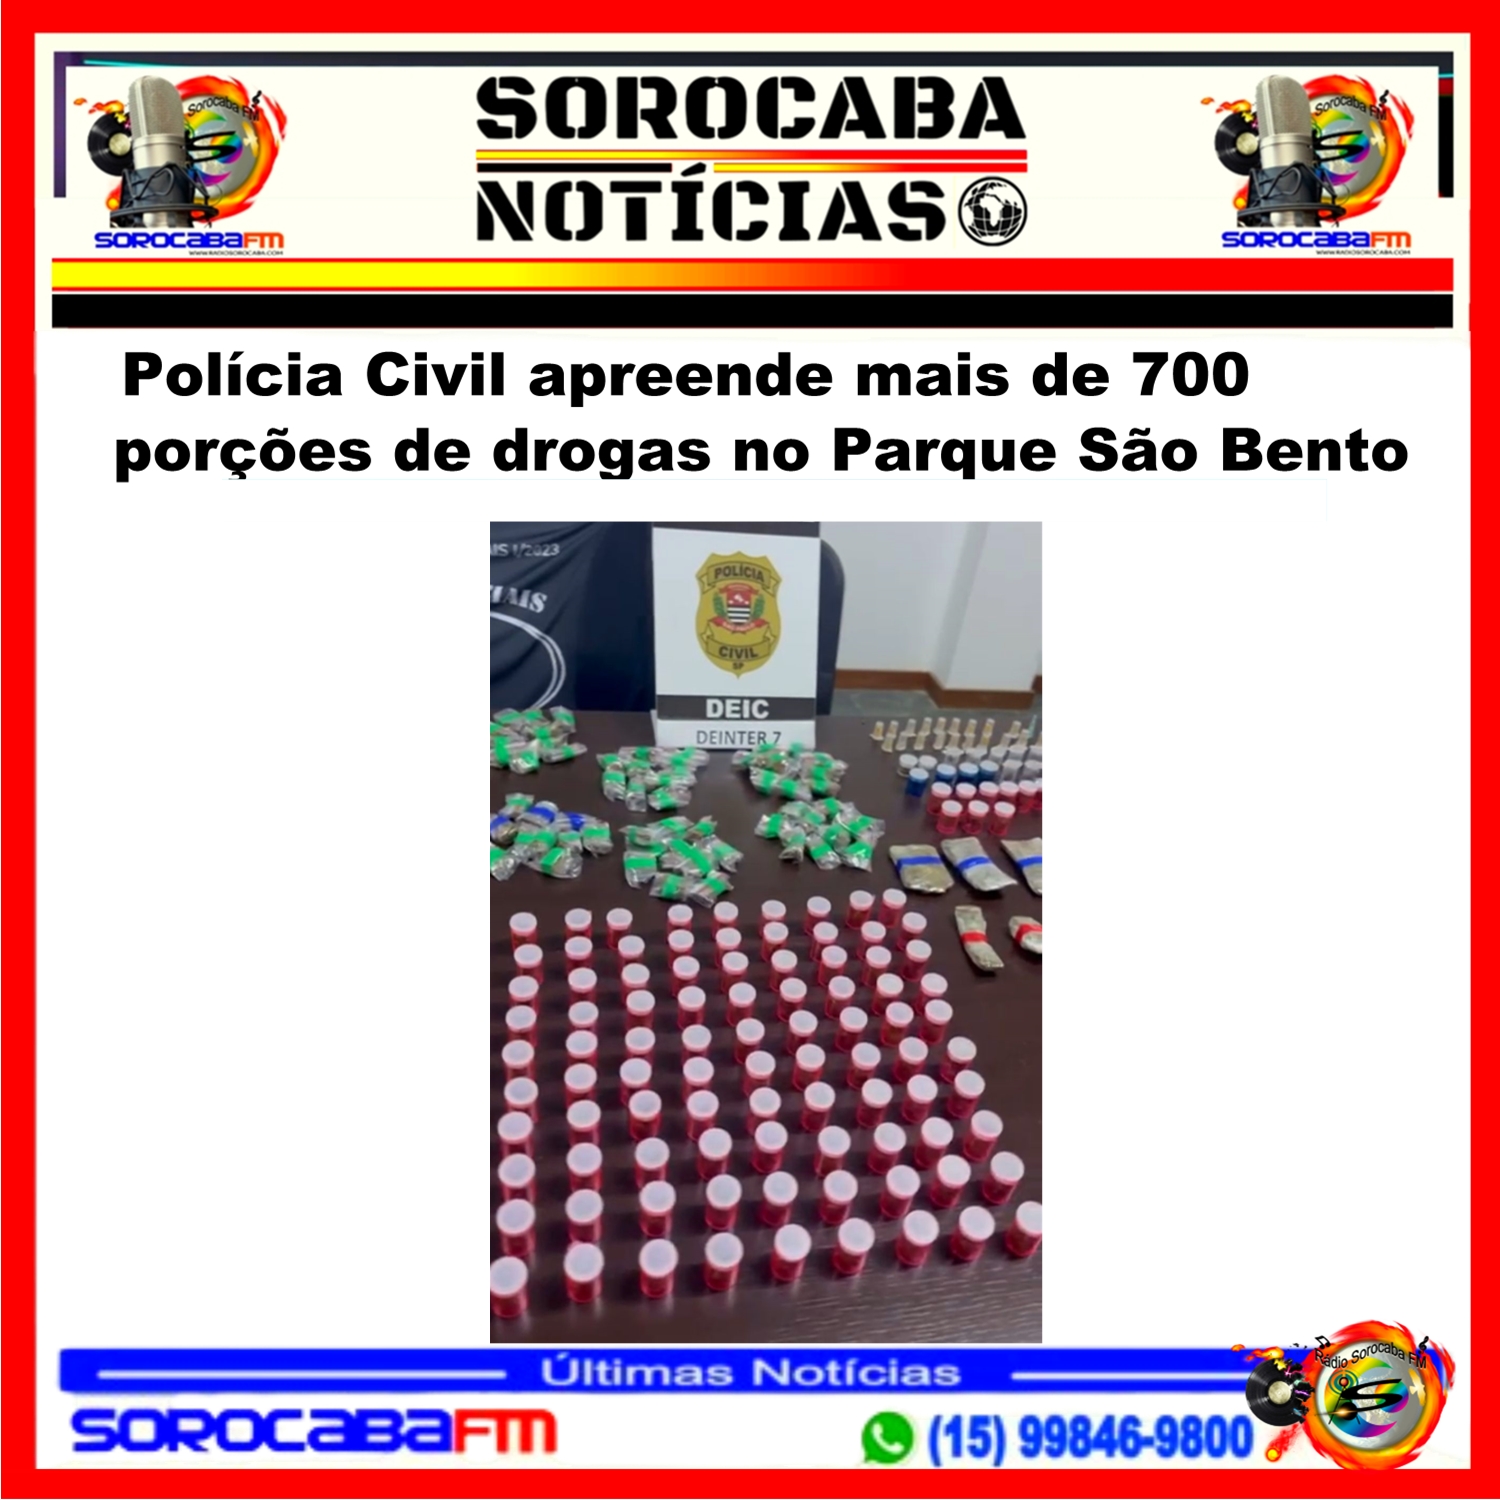 Polícia Civil apreende mais de 700 porções de drogas no Parque São Bento, zona norte de Sorocaba